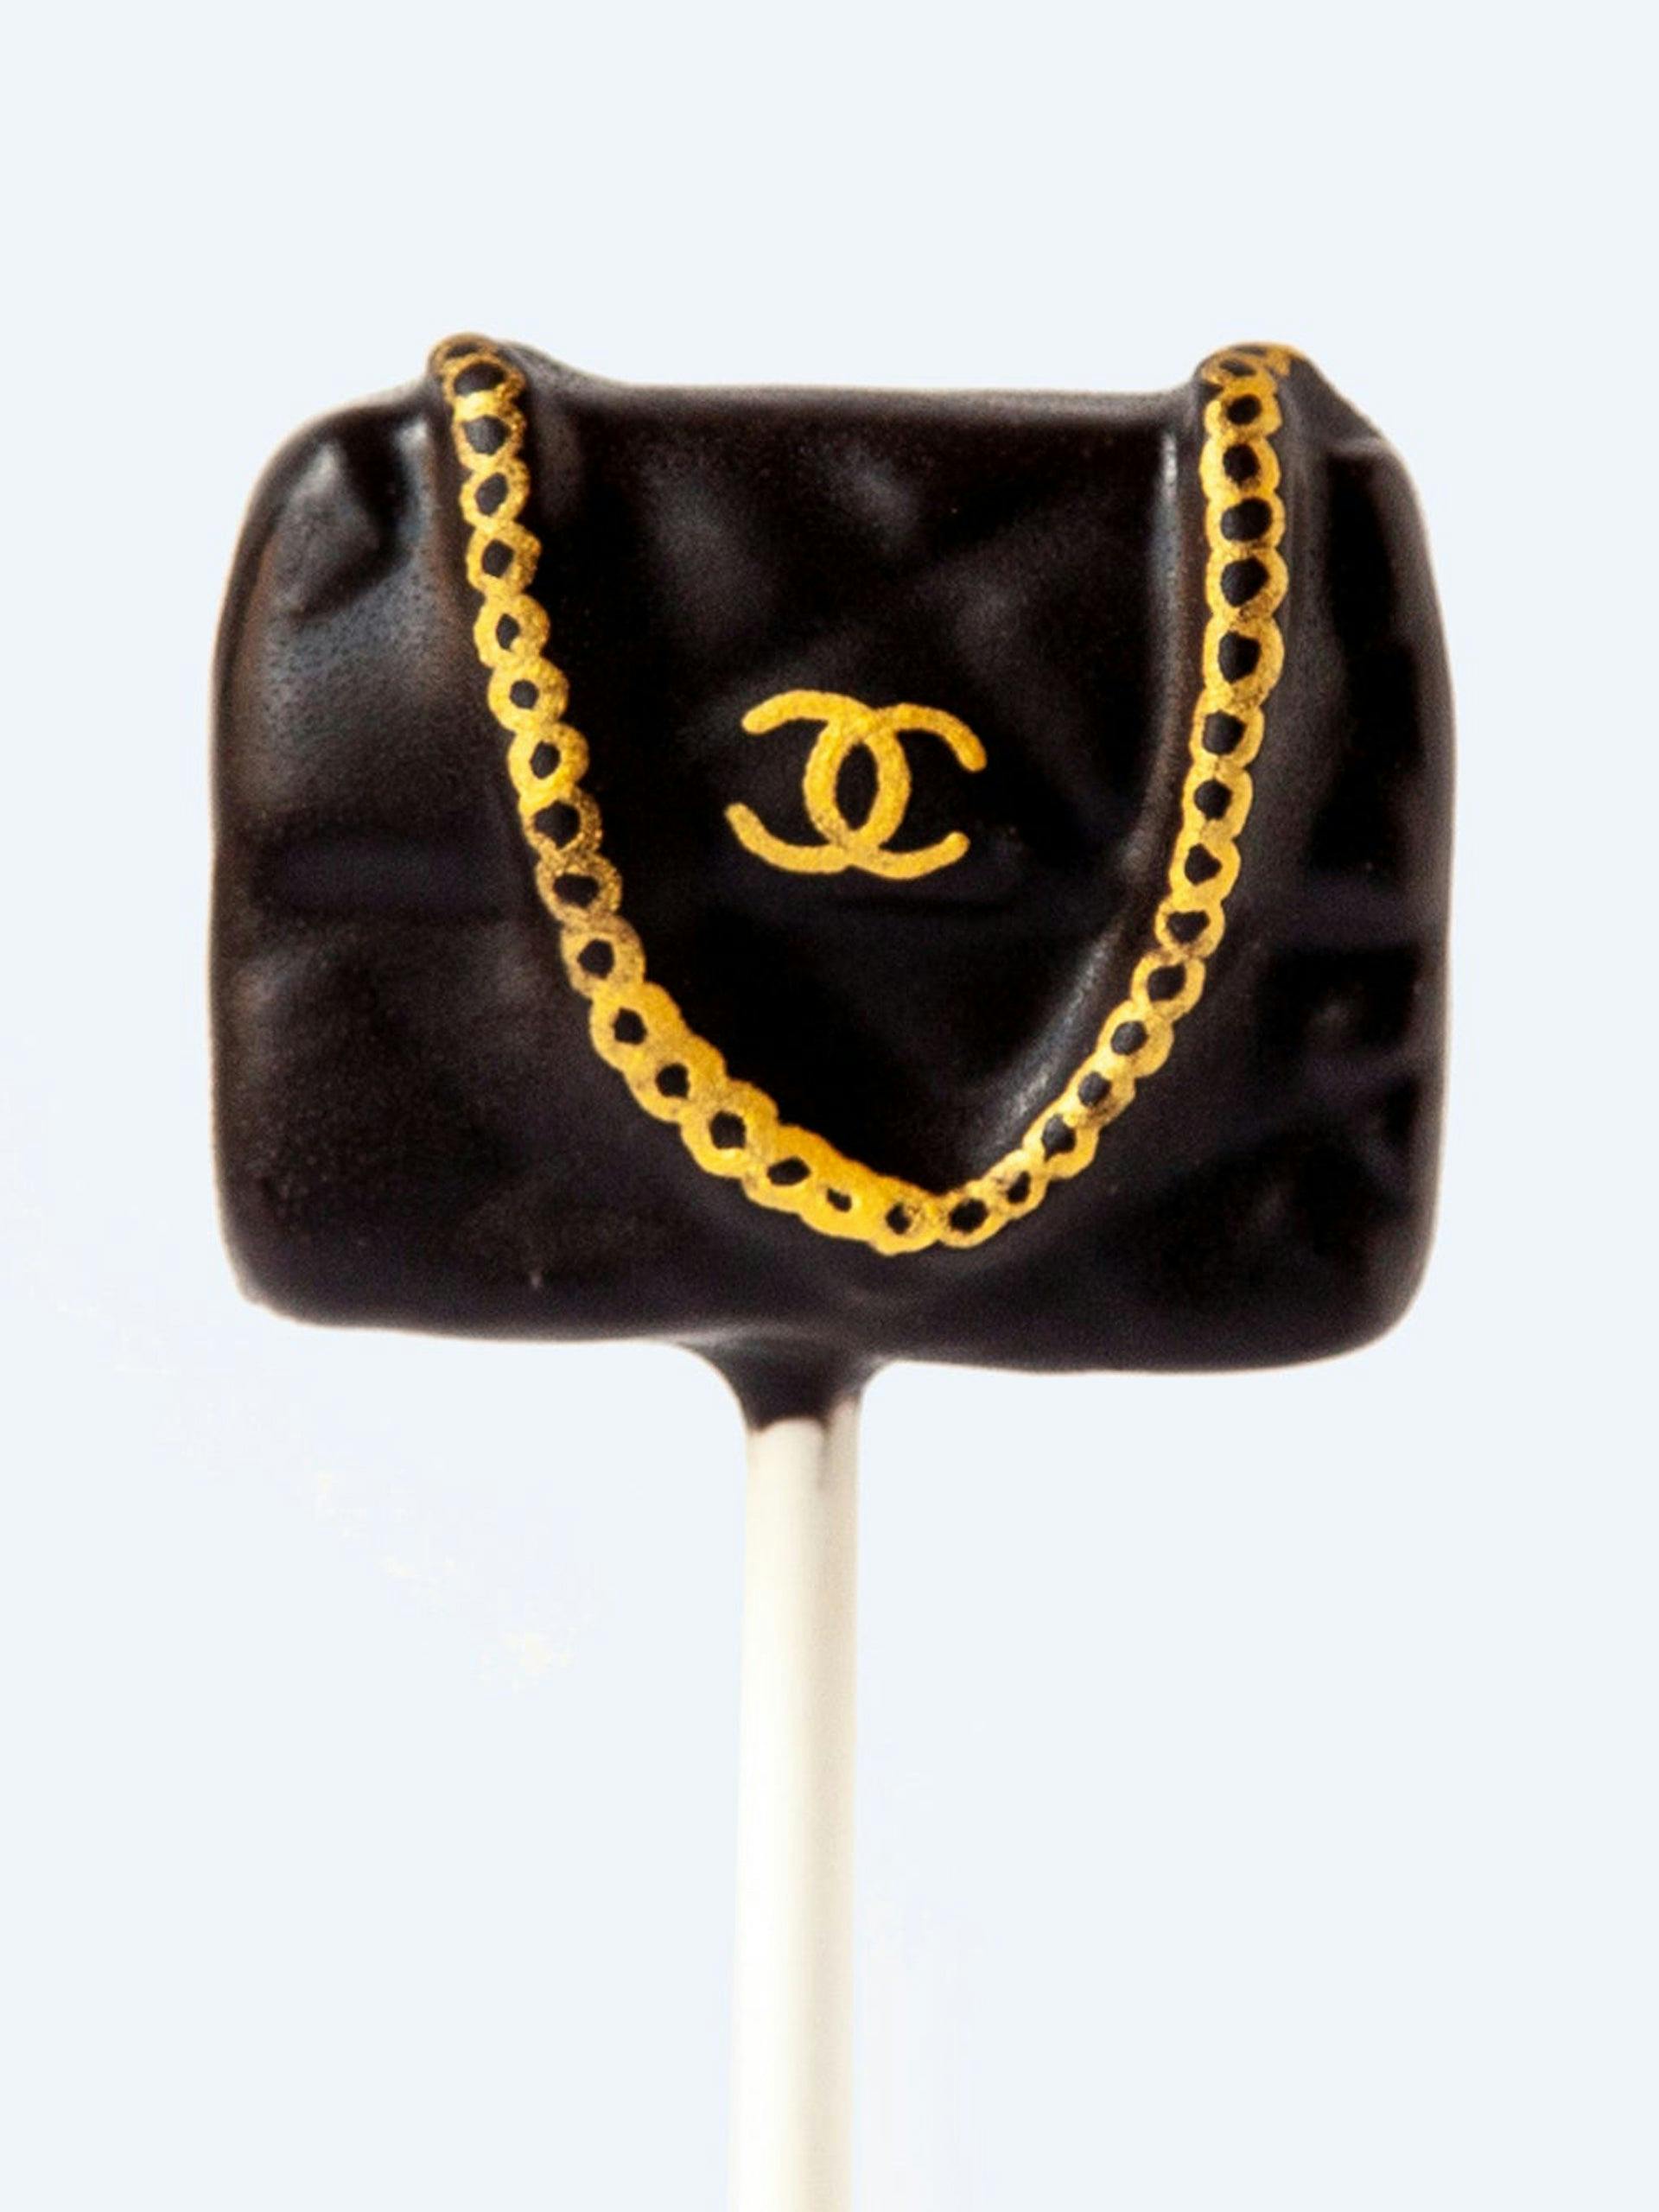 Handbag cakepop